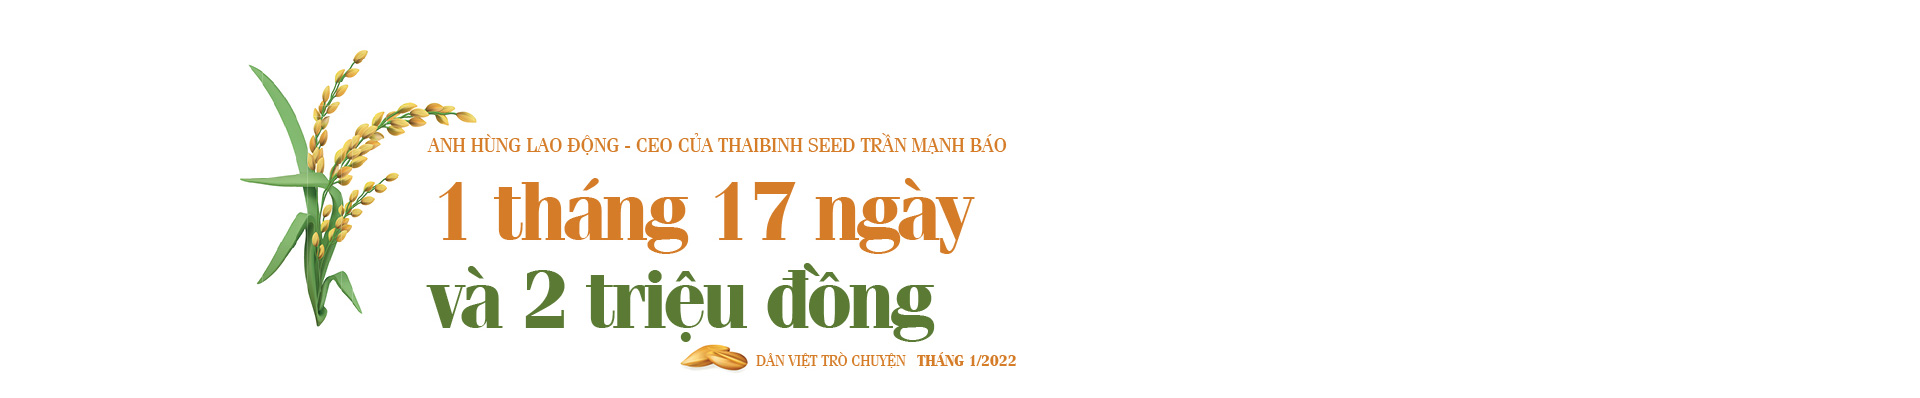 Anh hùng Lao động- CEO của ThaiBinh Seed Trần Mạnh Báo: Viết tiếp hành trình Người nông dân mới  - Ảnh 10.